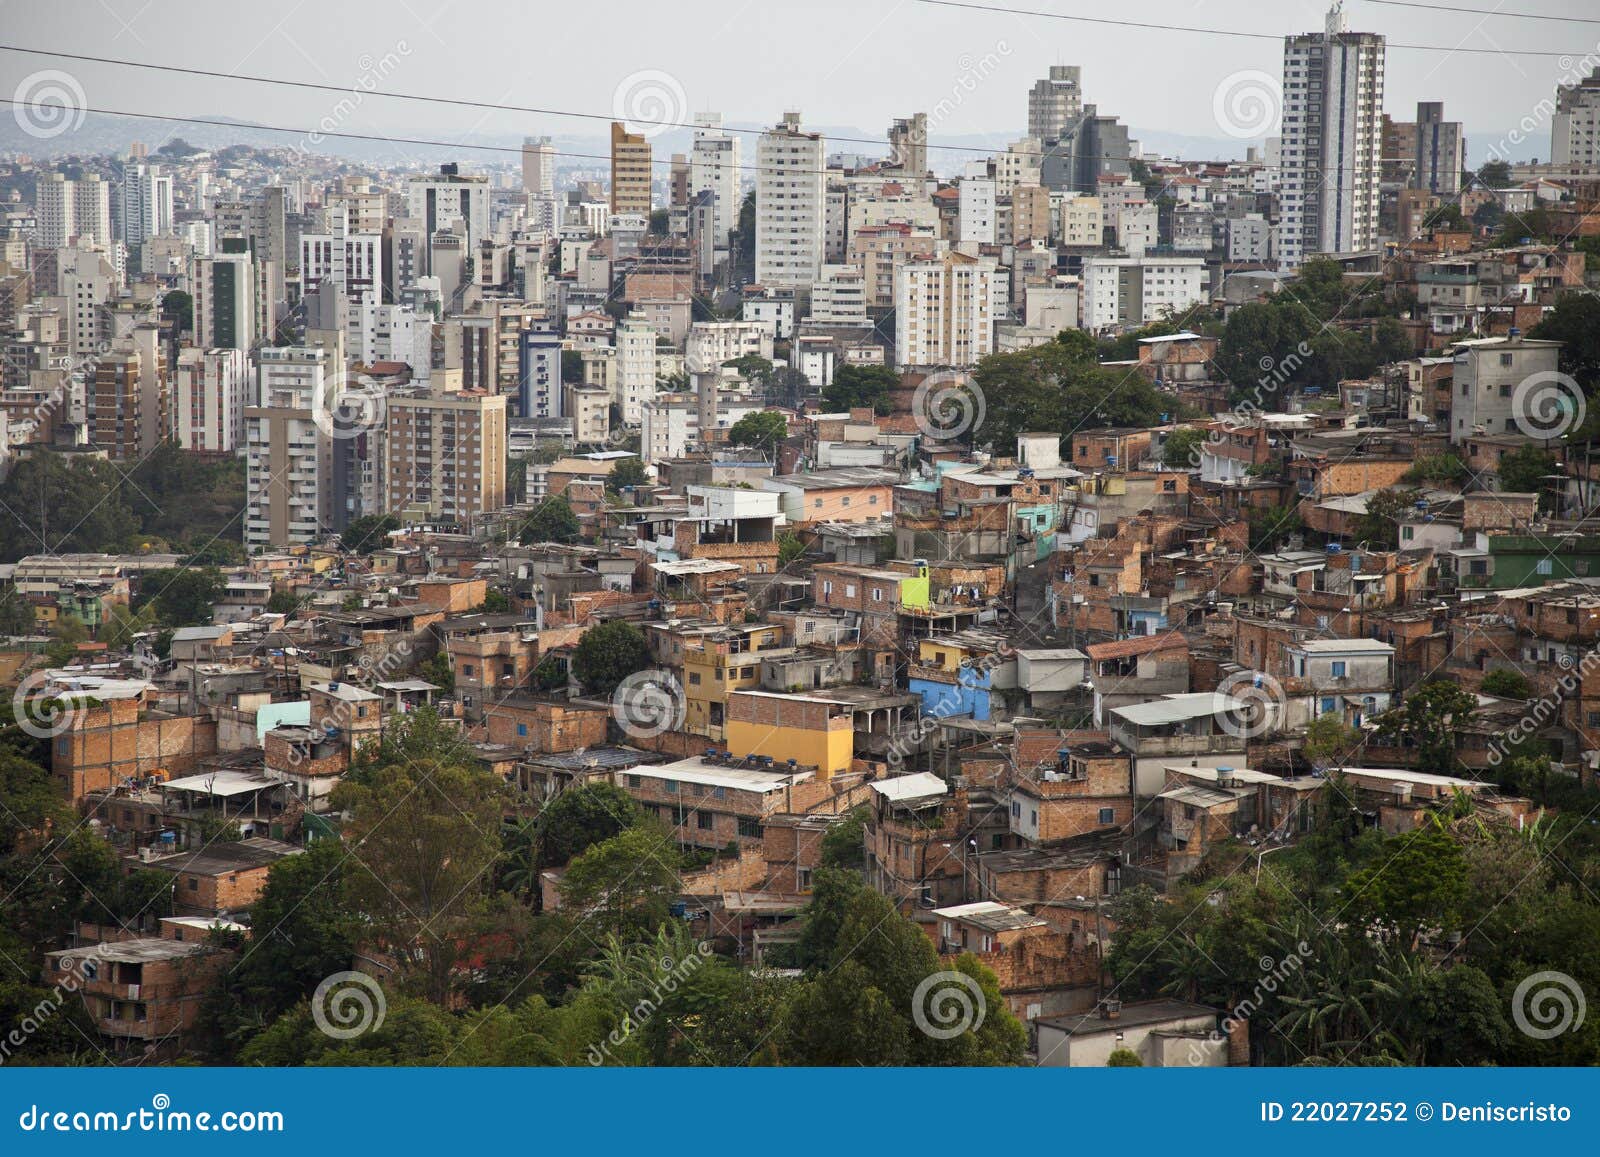 building and poor slum of brazil.